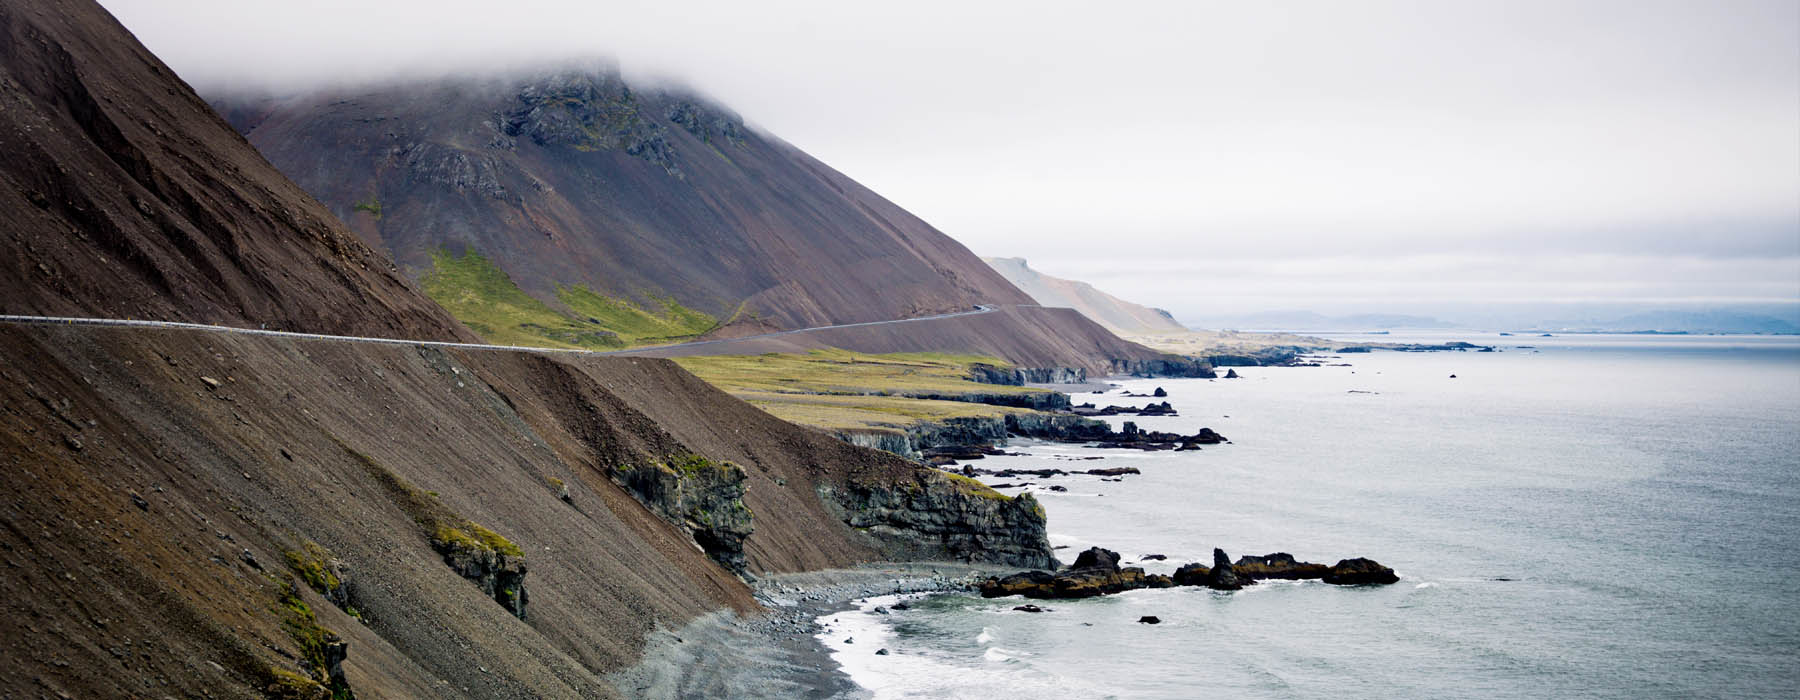 Des lieux qui s'engagent Islande